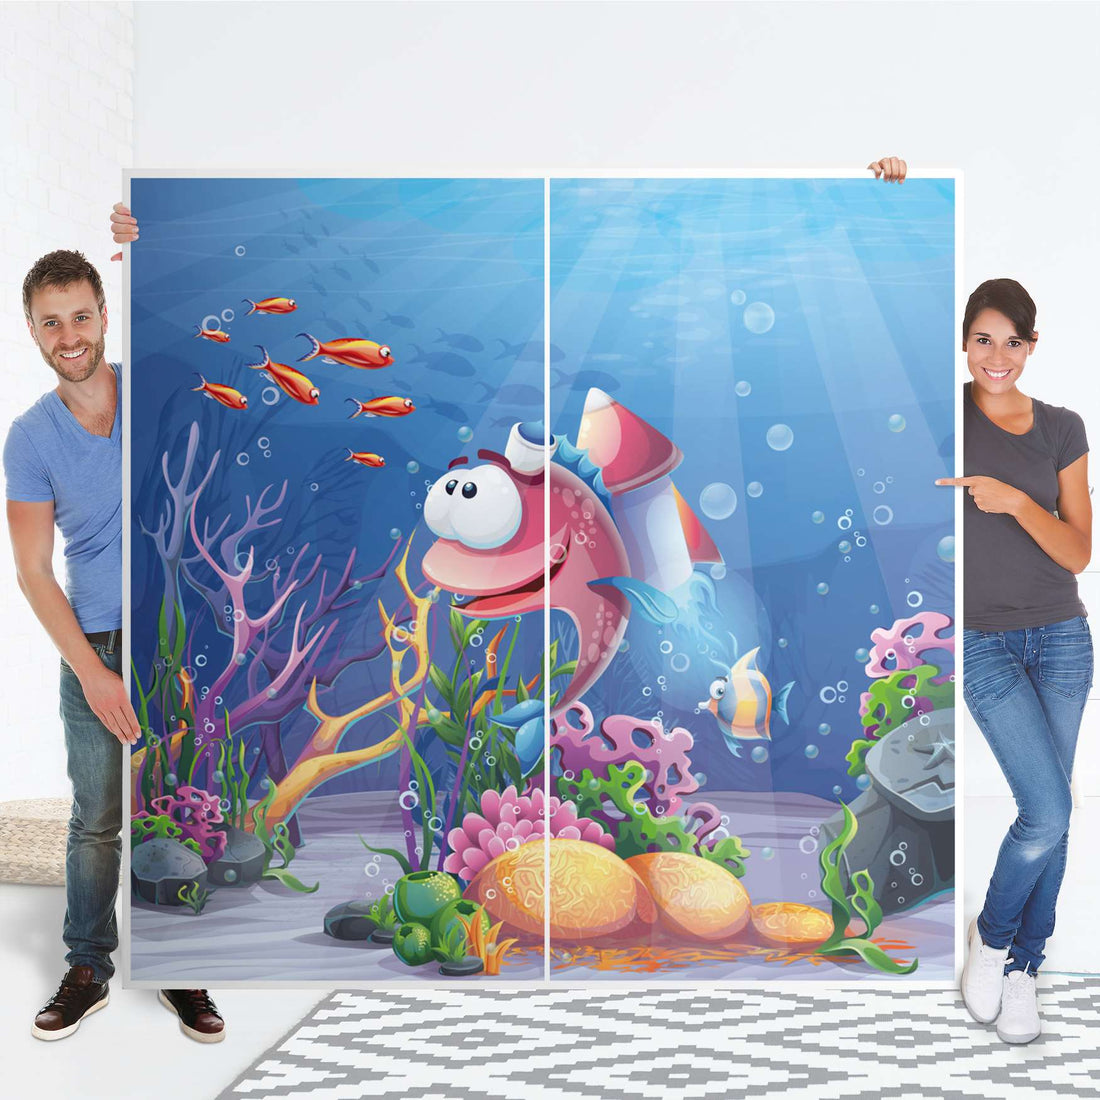 Möbel Klebefolie Bubbles - IKEA Pax Schrank 201 cm Höhe - Schiebetür - Folie